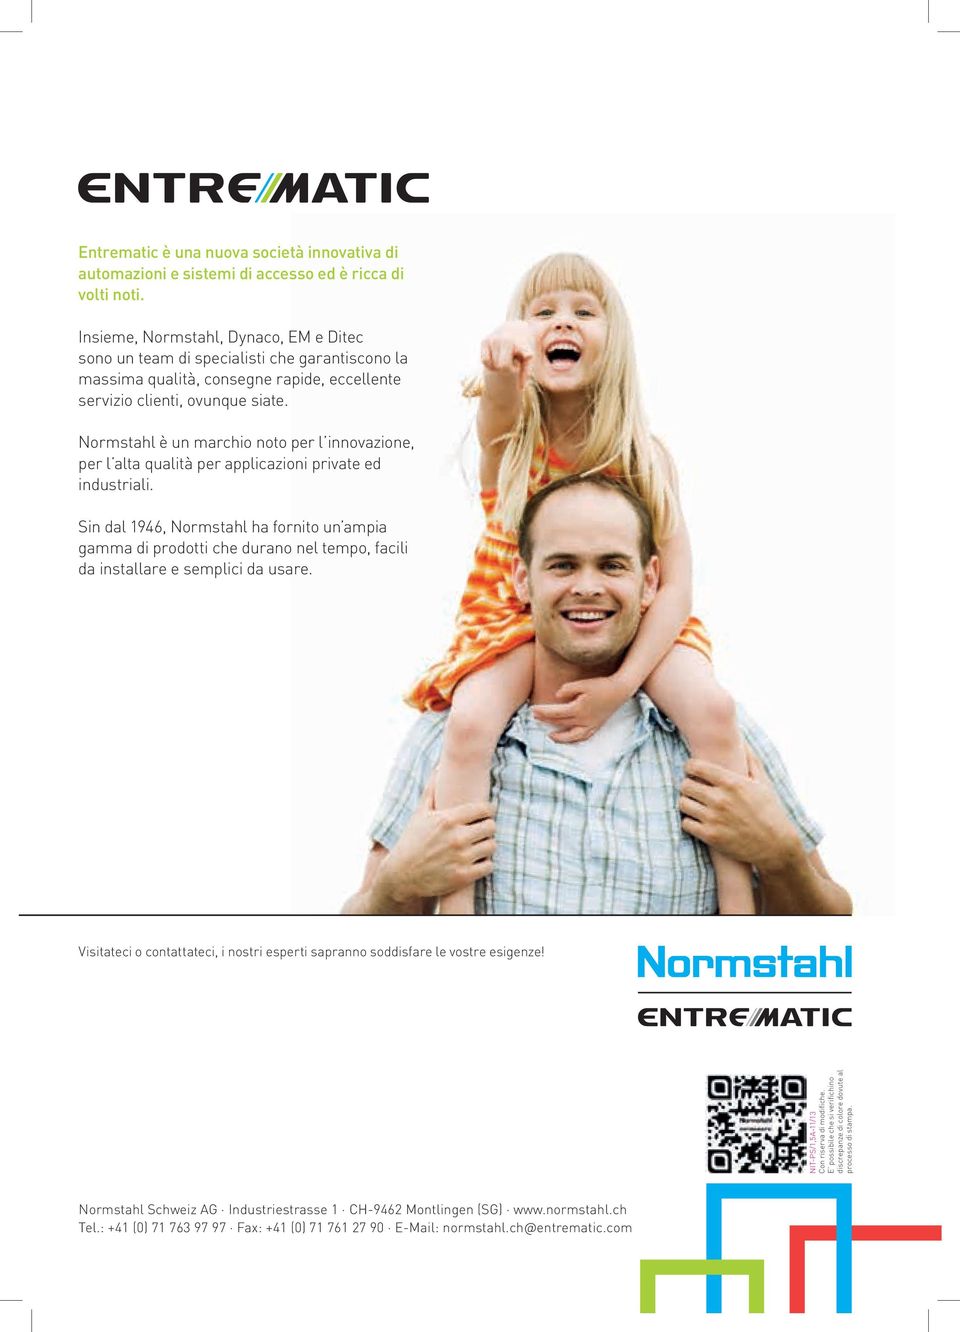 Normstahl è un marchio noto per l innovazione, per l alta qualità per applicazioni private ed industriali.